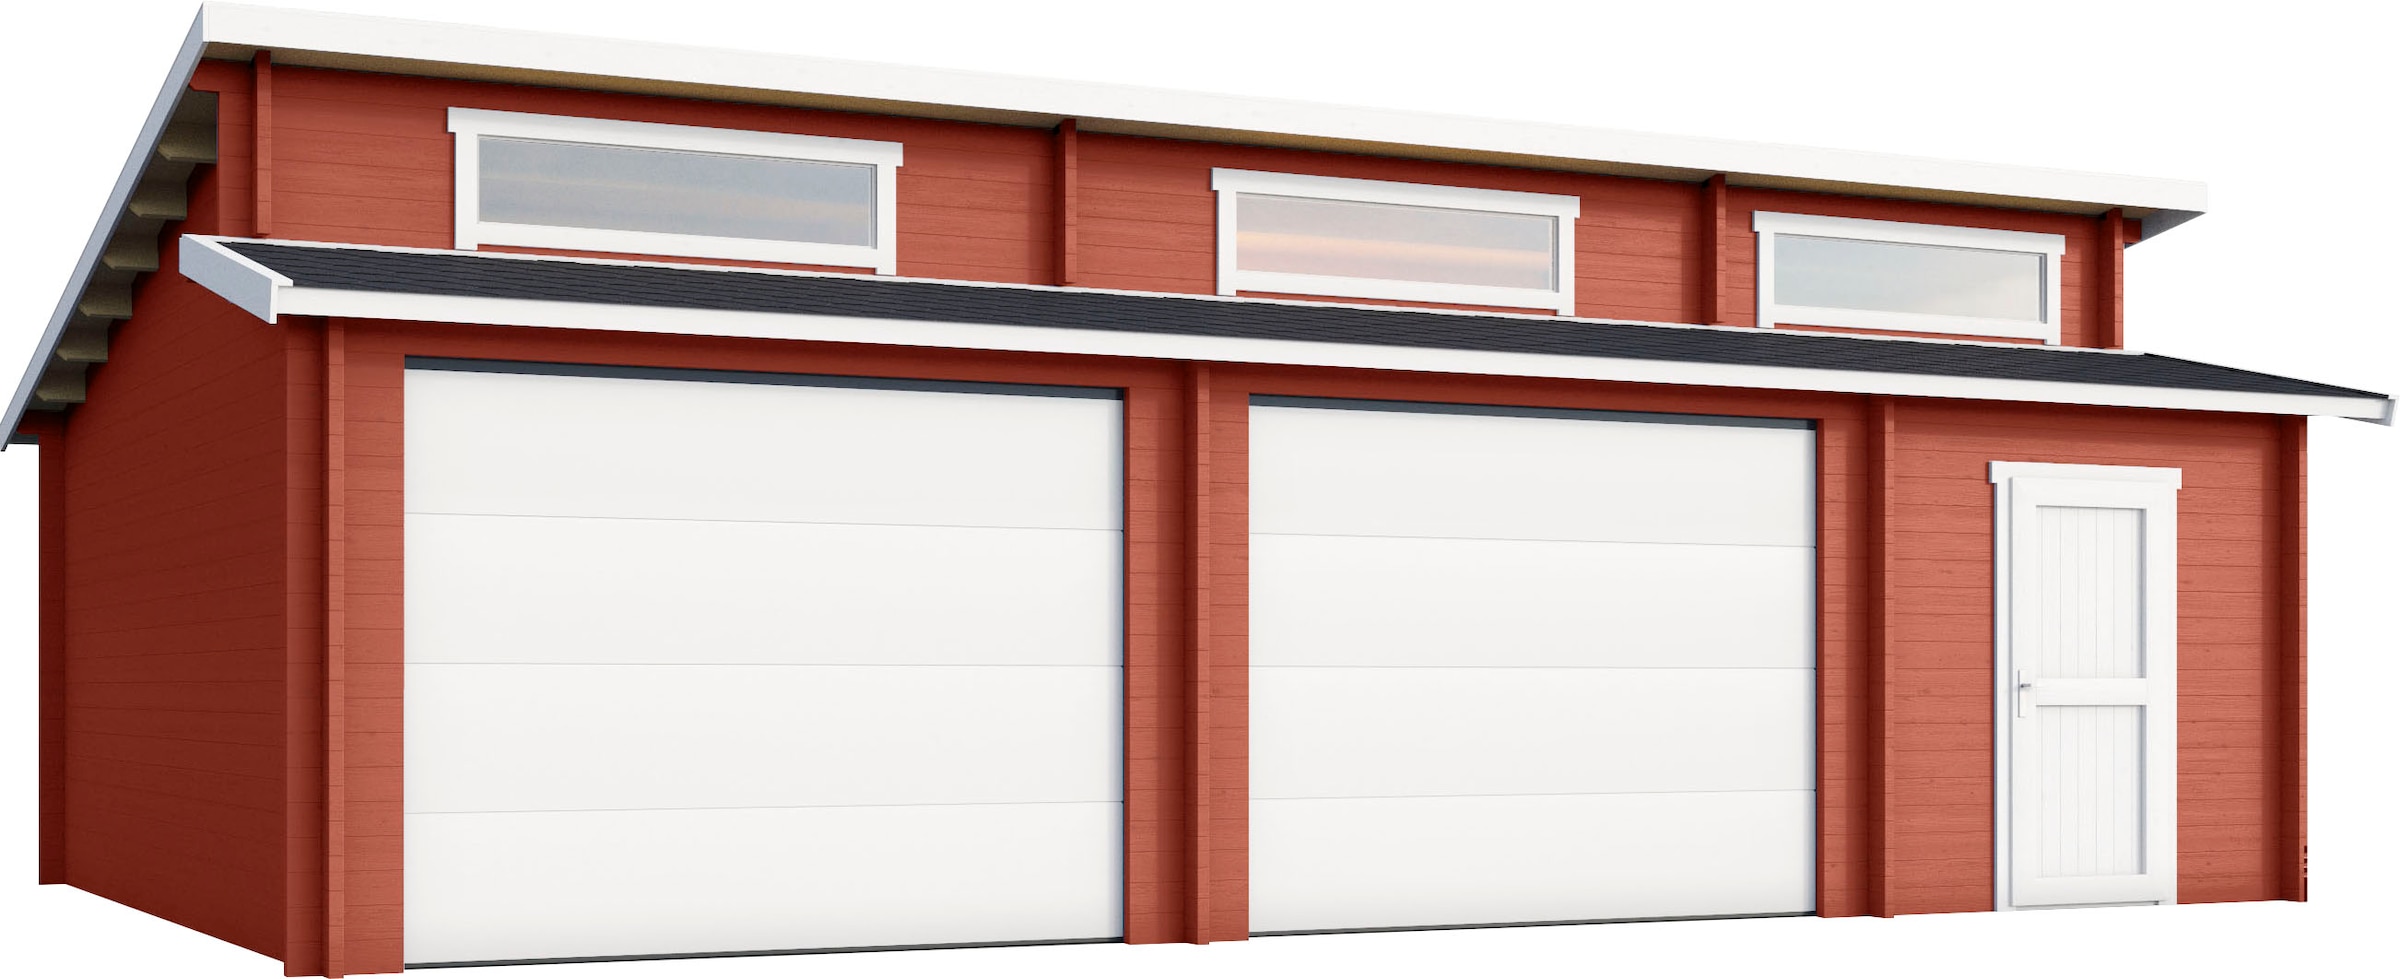 Garage online jetzt | kaufen Moderne auf Garagen